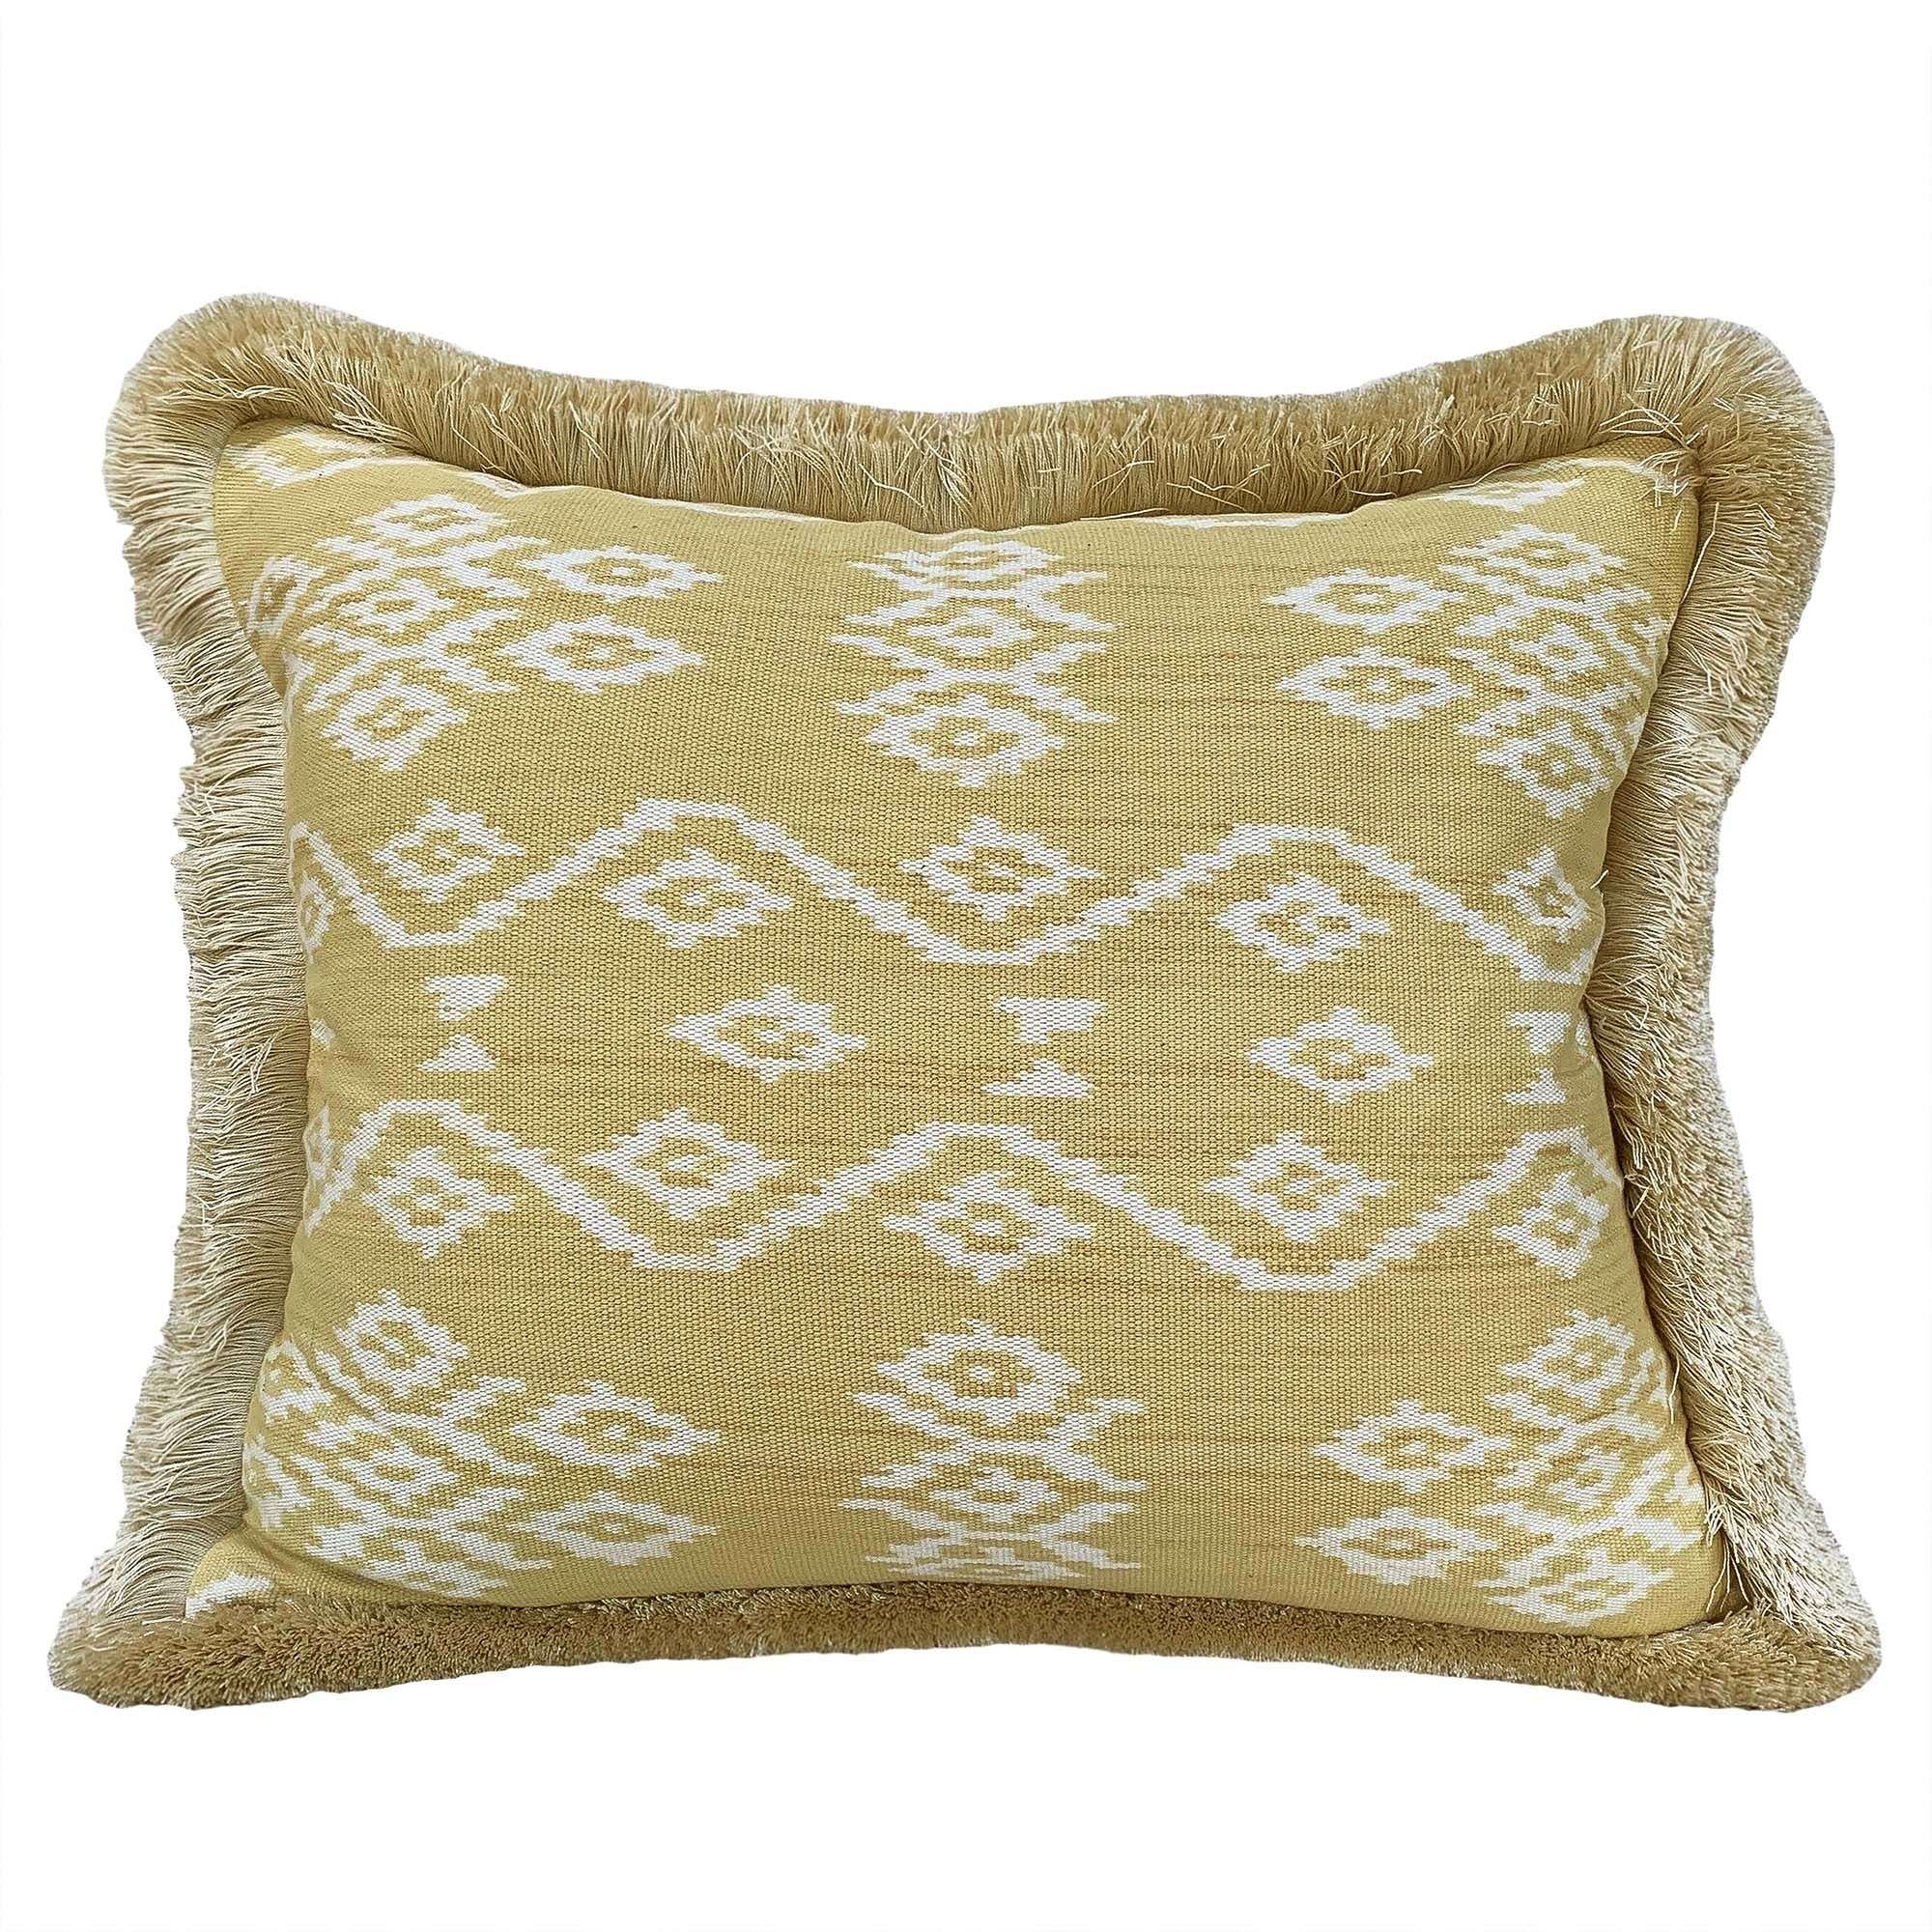 Rote ikat cushion with brush fringe